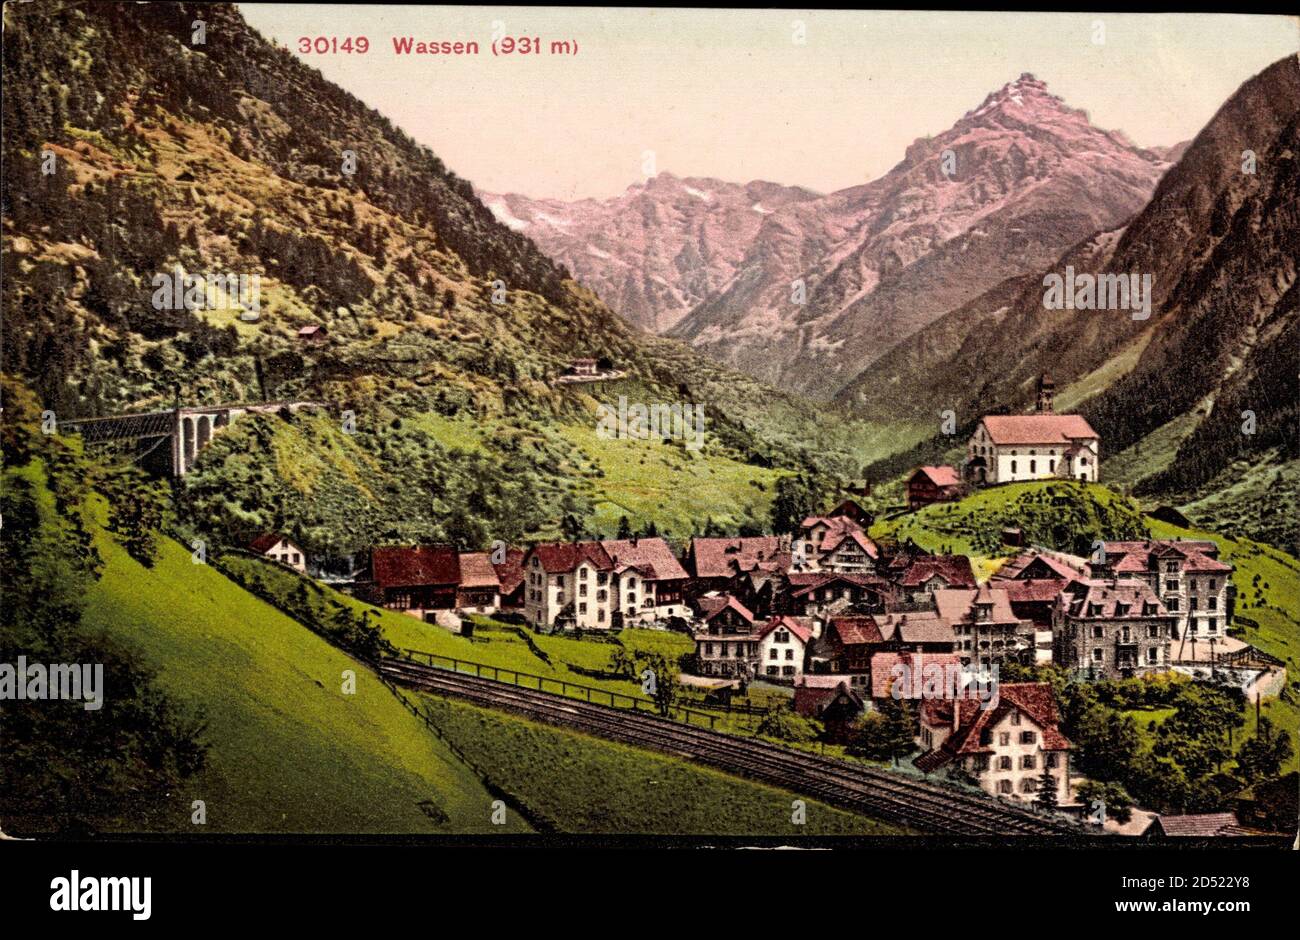 Wassen Kt. Uri, Totalansicht, Ortschaft im Tal, Gleise, Viadukt, Gebirge | usage worldwide Stock Photo